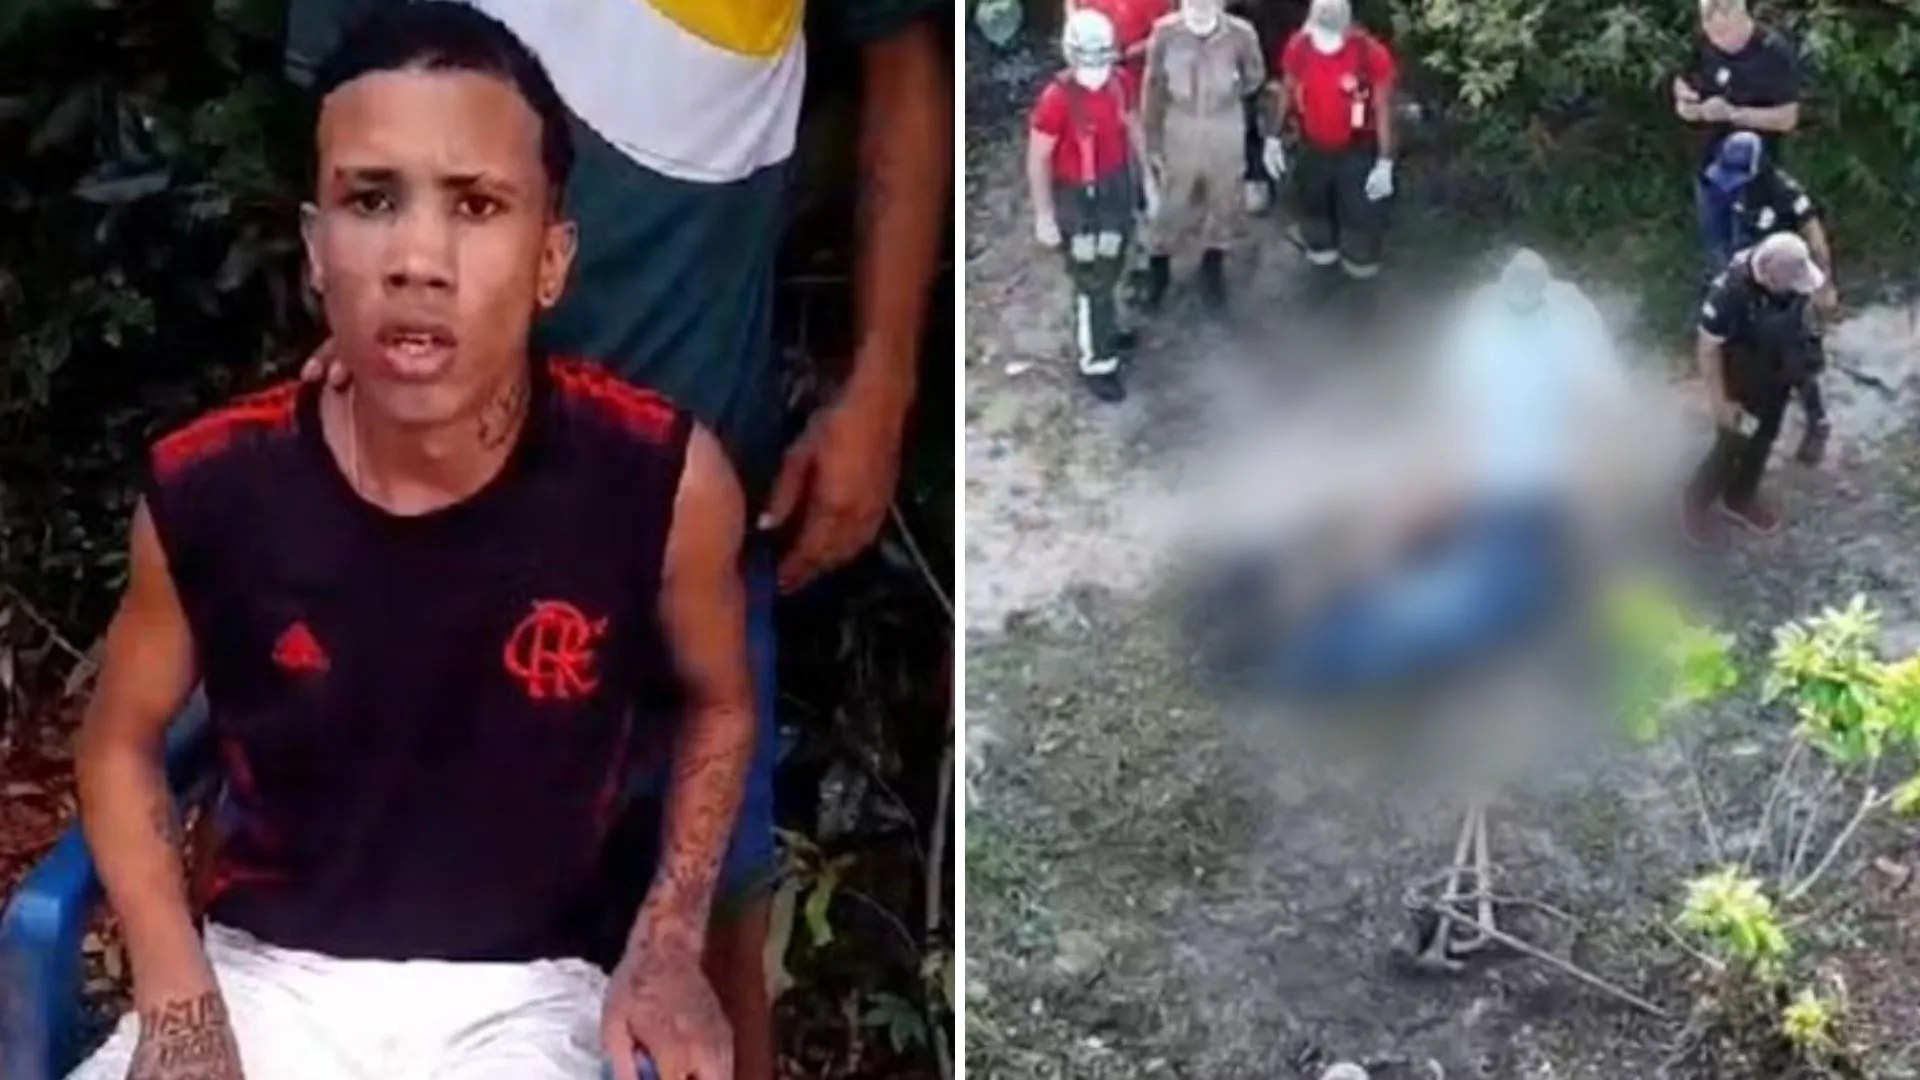 Corpo encontrado em mata pode ser de adolescente desaparecido em São Luís